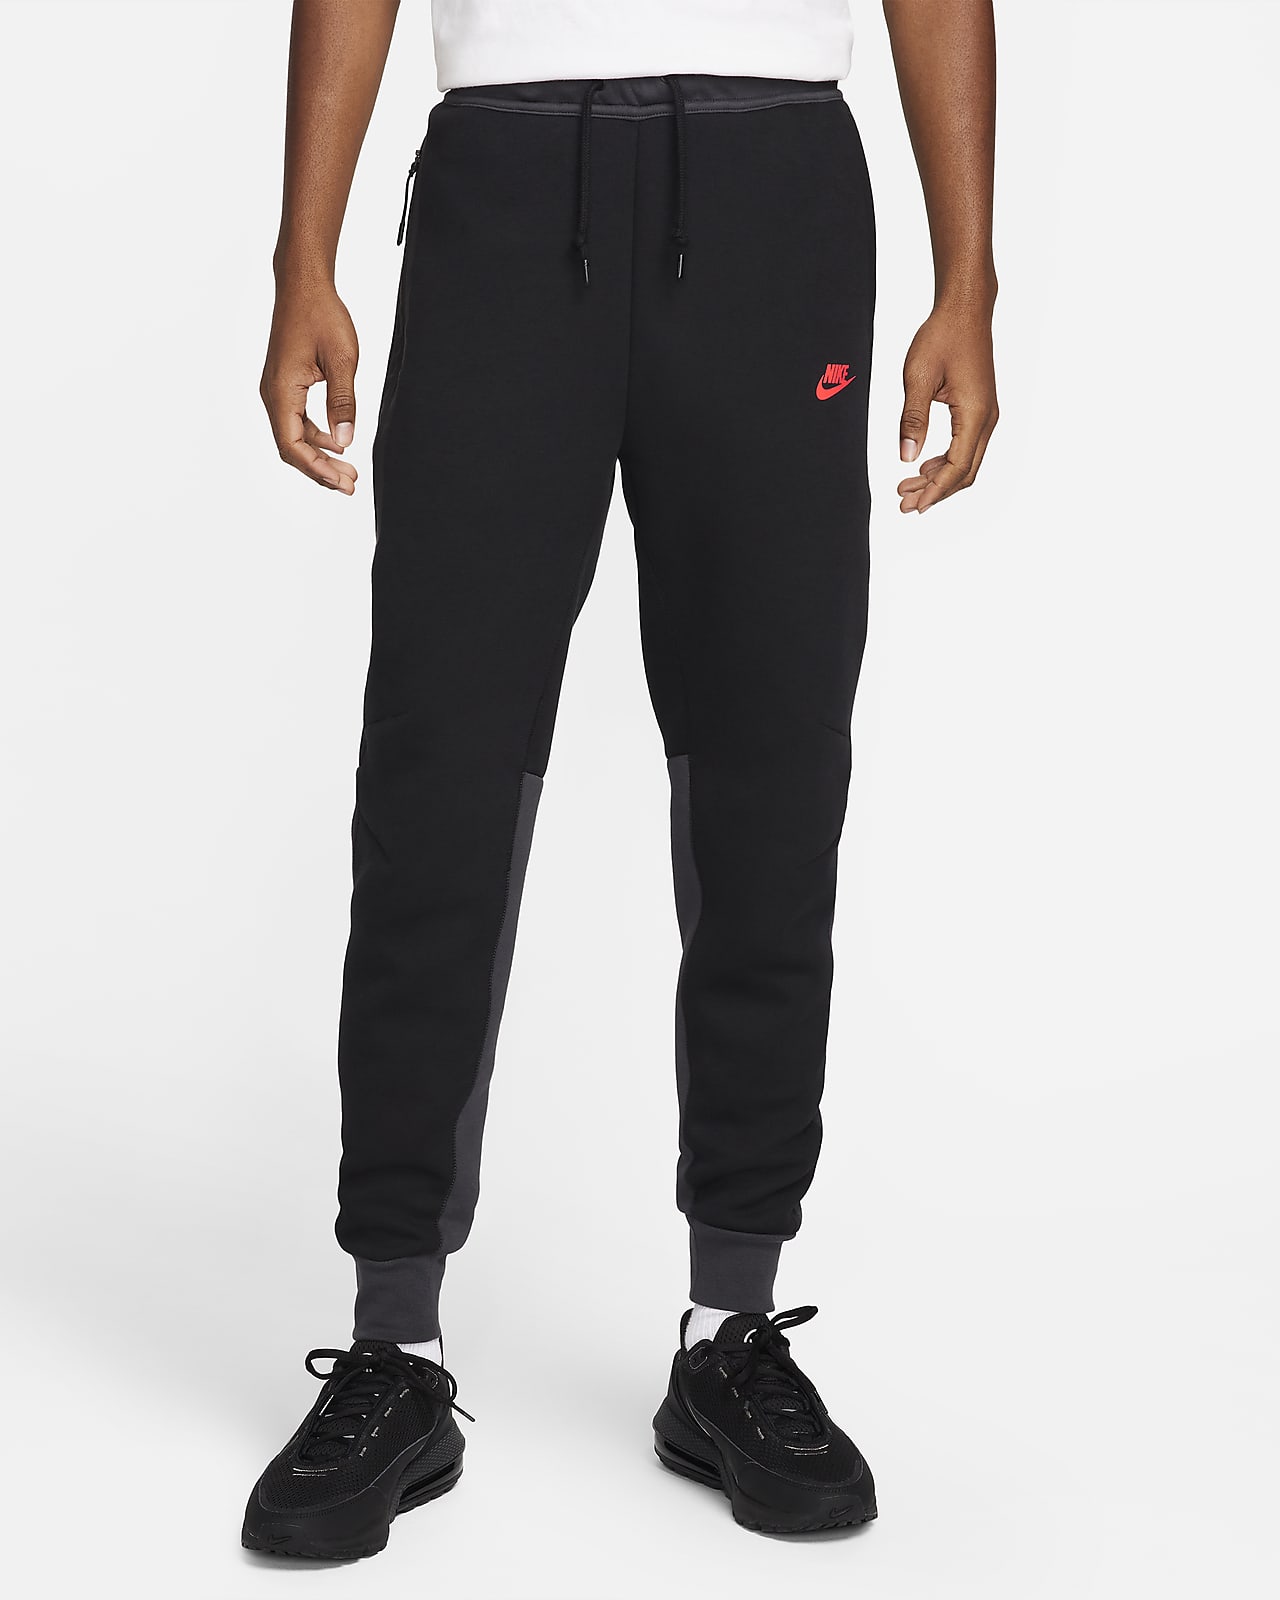 Nike Sportswear Tech Fleece Joggers White/Black